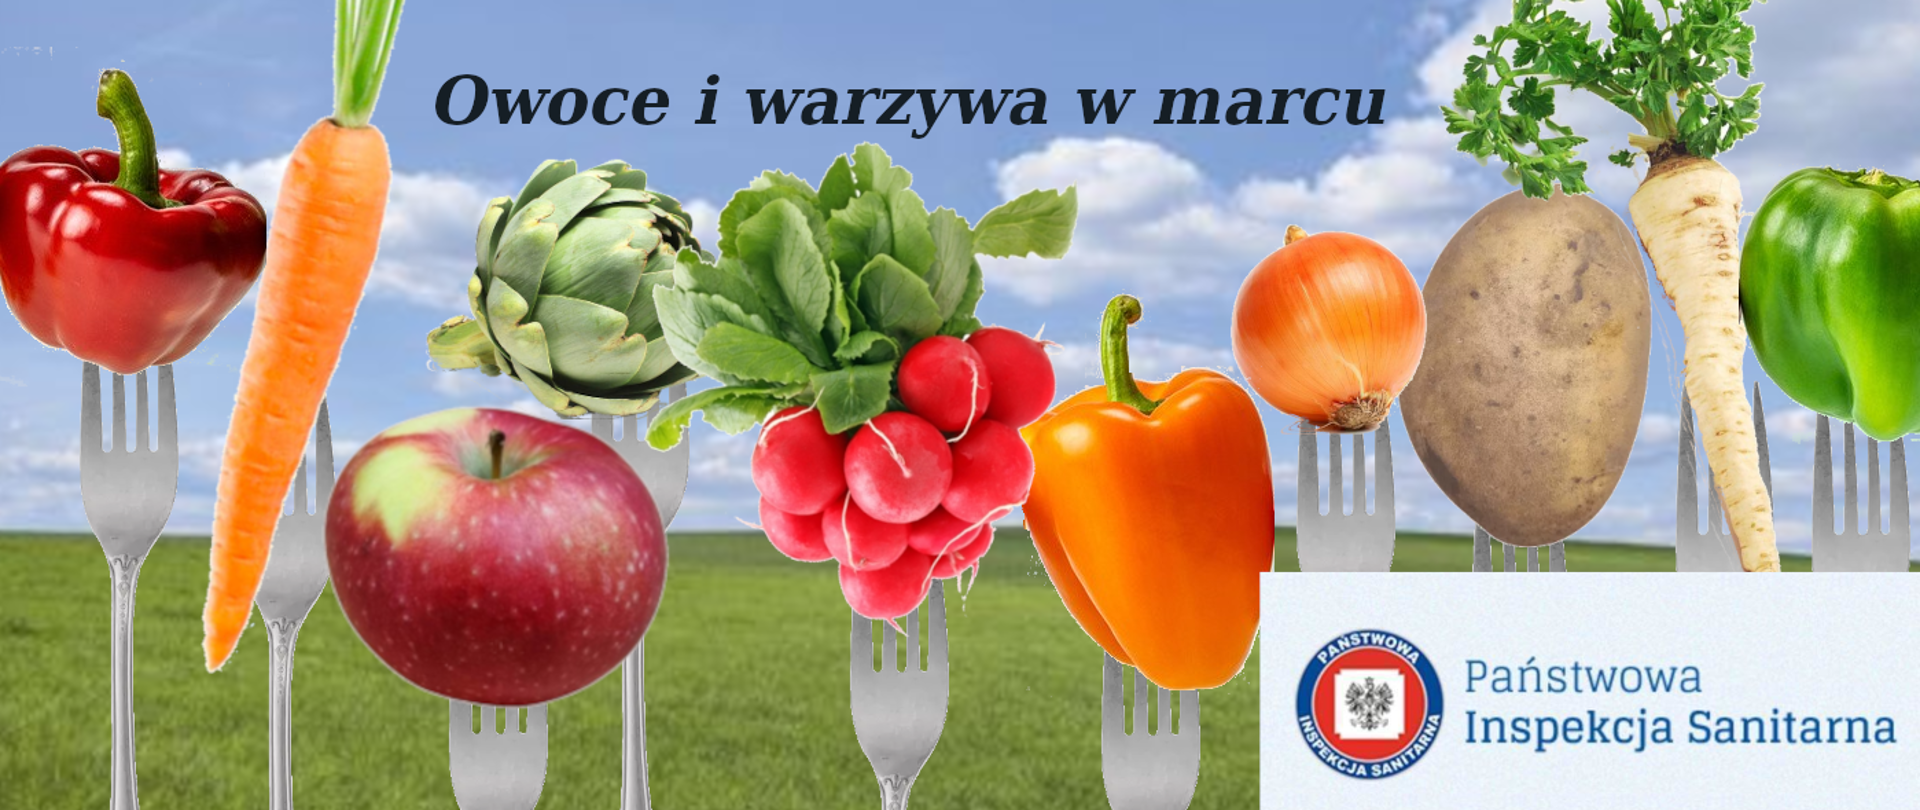 Owoce i warzywa w marcu 